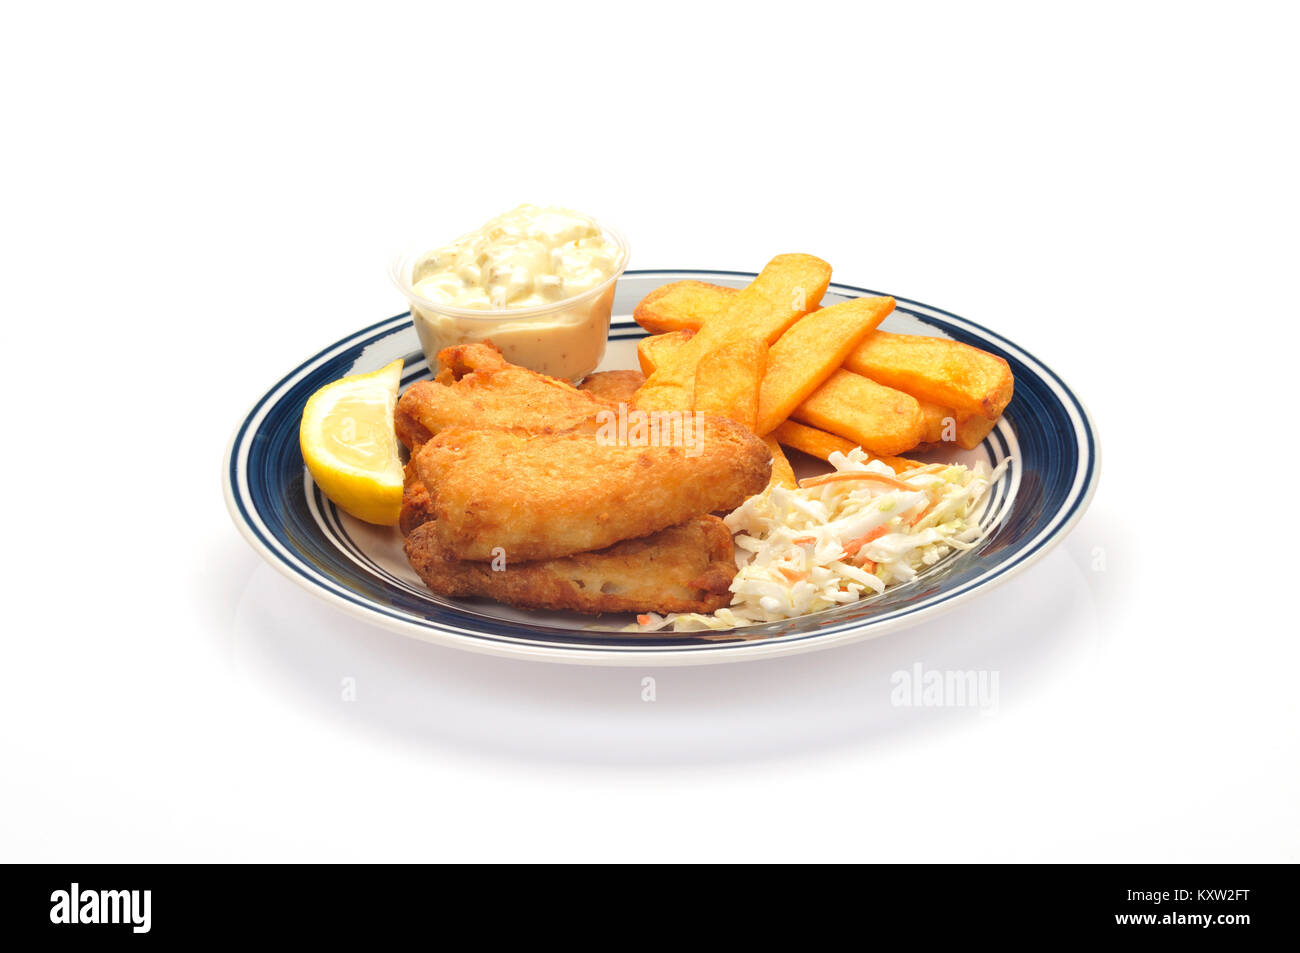 Pescado frito con patatas fritas y coleslaw una cuña de limón y salsa tártara sobre placa azul y blanco sobre fondo blanco cortado Foto de stock